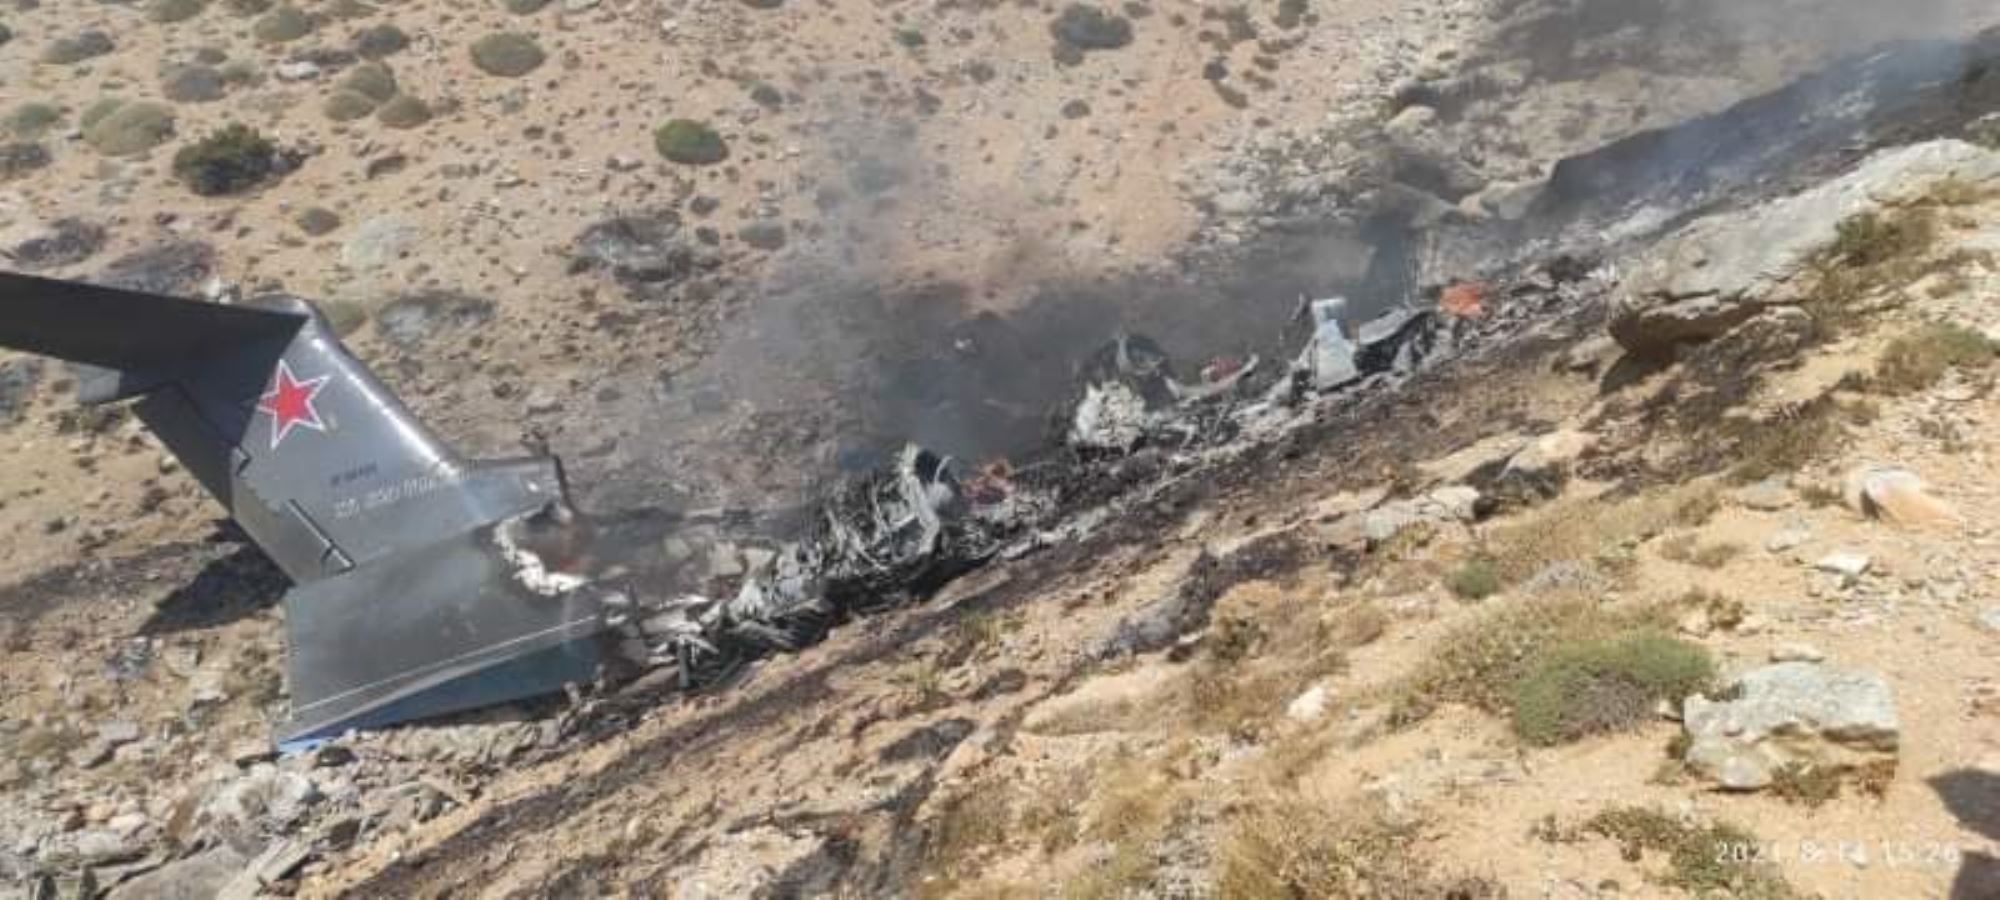 8 نفر در حادثه سقوط هواپیمای روسی اطفای حریق در ترکیه جان باختند